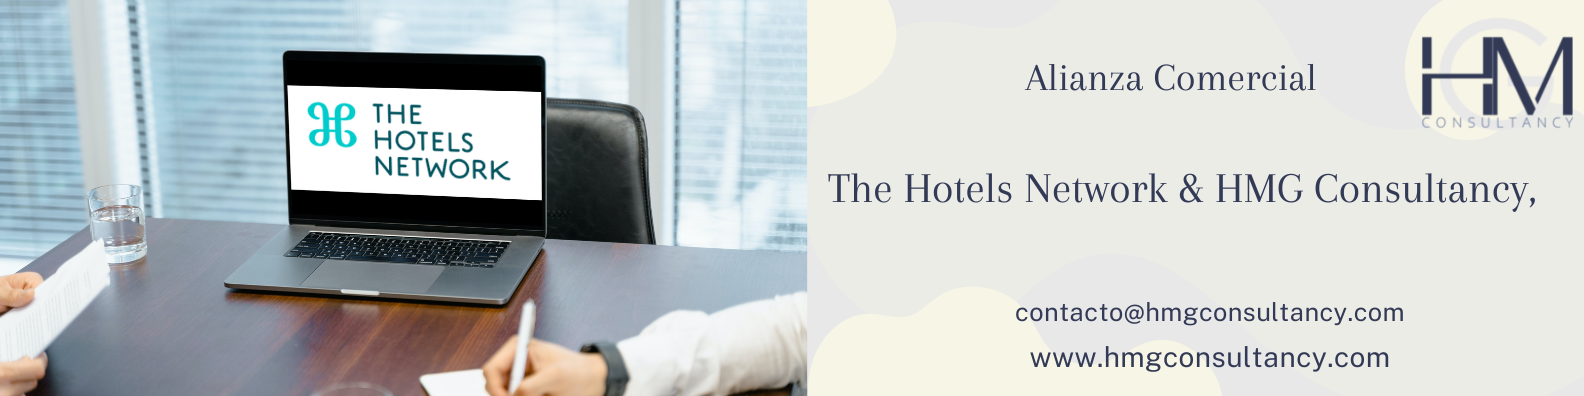 The Hotels Network & HMG Consultancy, aliados en la mejora de tu canal directo de ventas